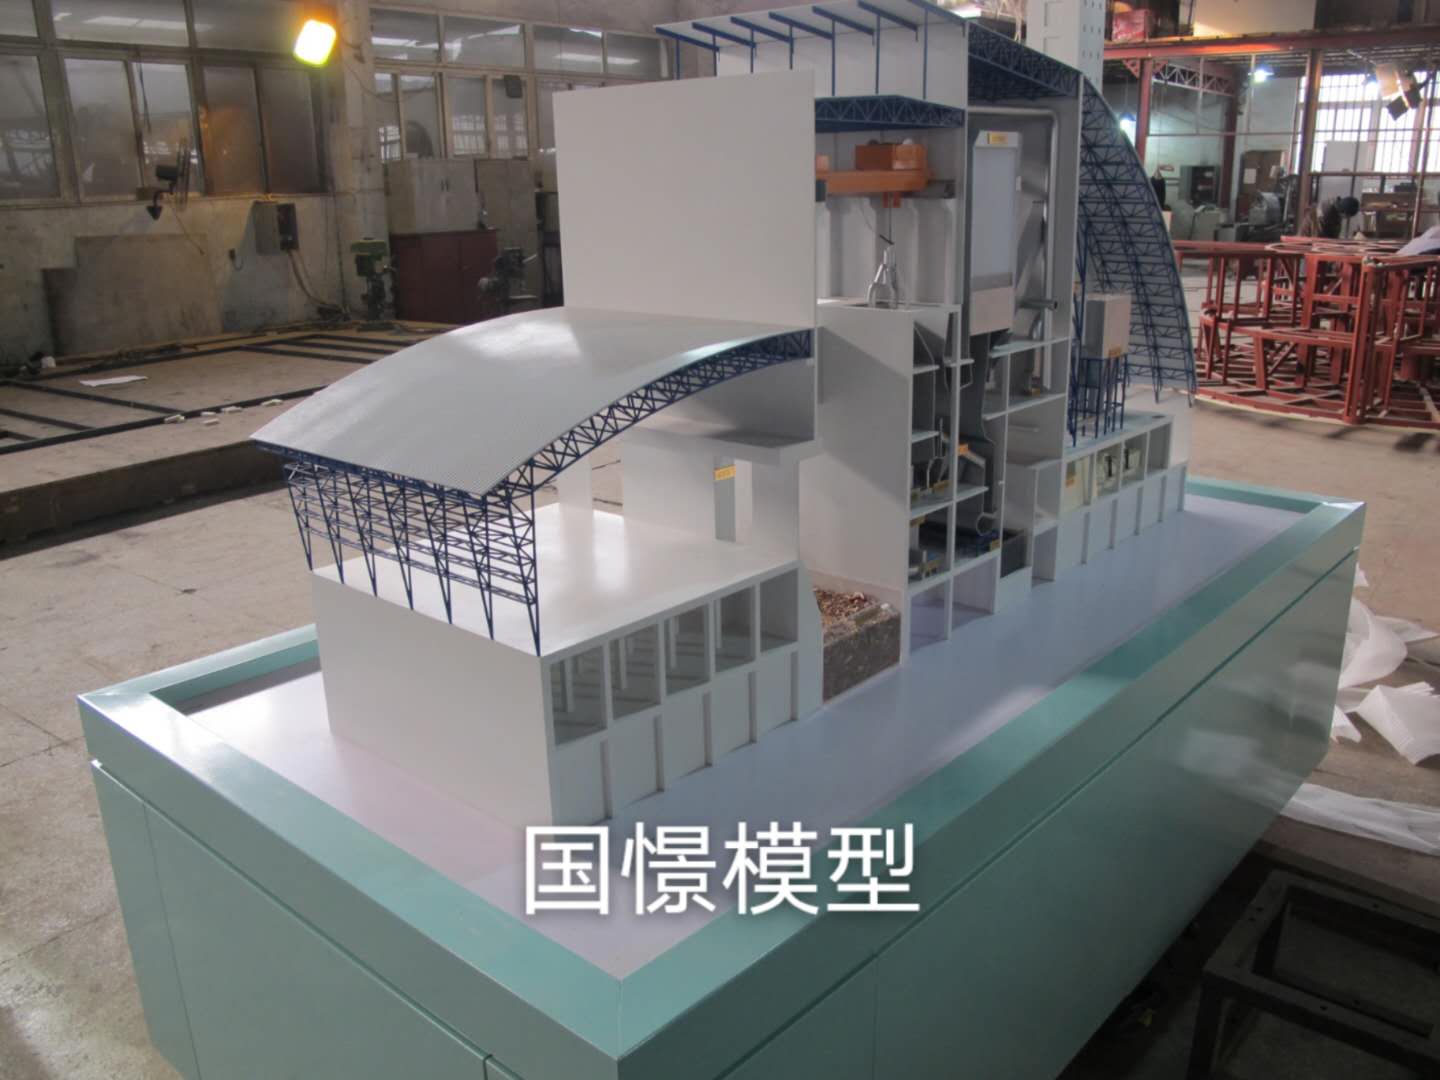 成安县工业模型